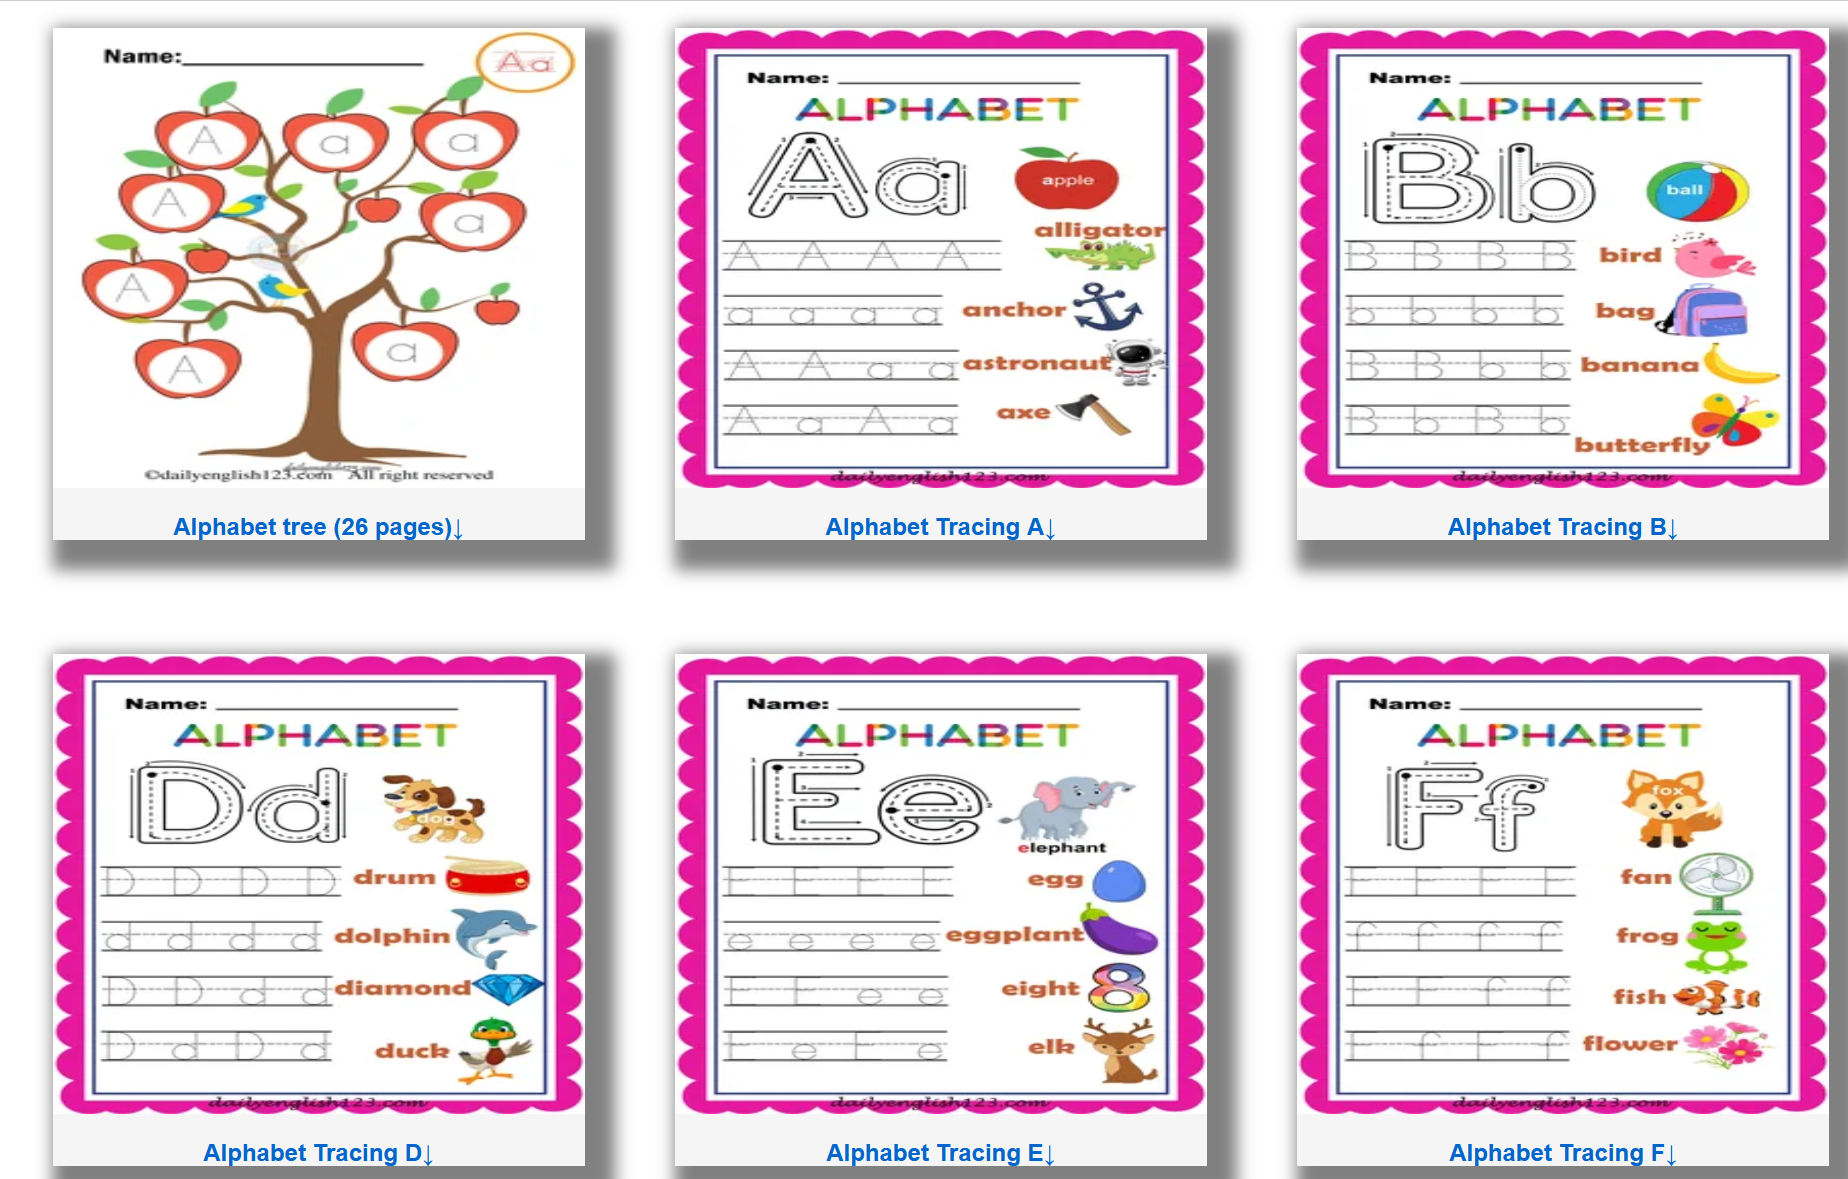 TÀI LIỆU Kindergarten worksheets english pdf free download